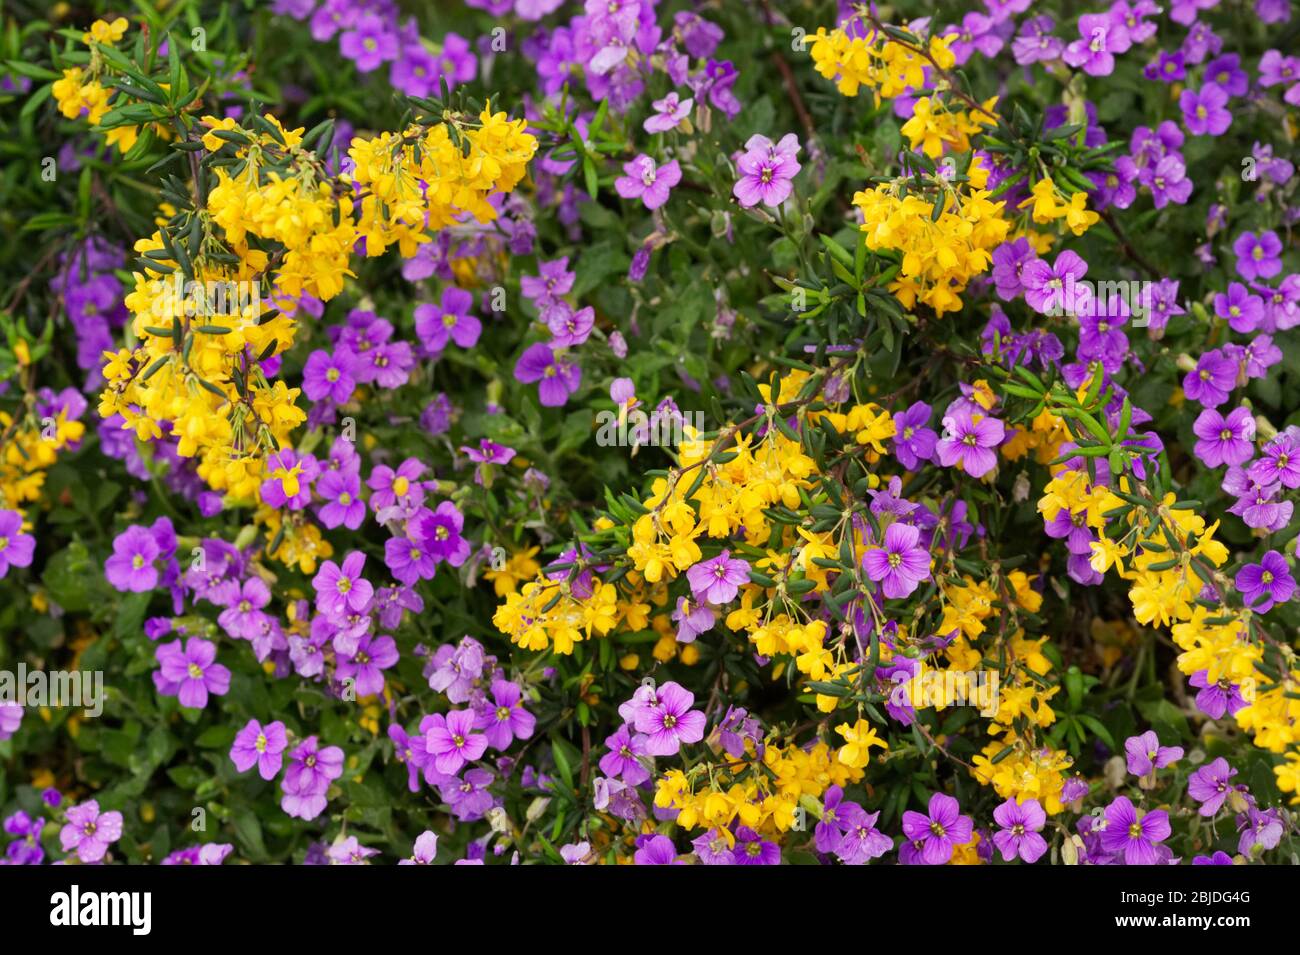 Berberis and Aubretia flowering in Spring. Stock Photo